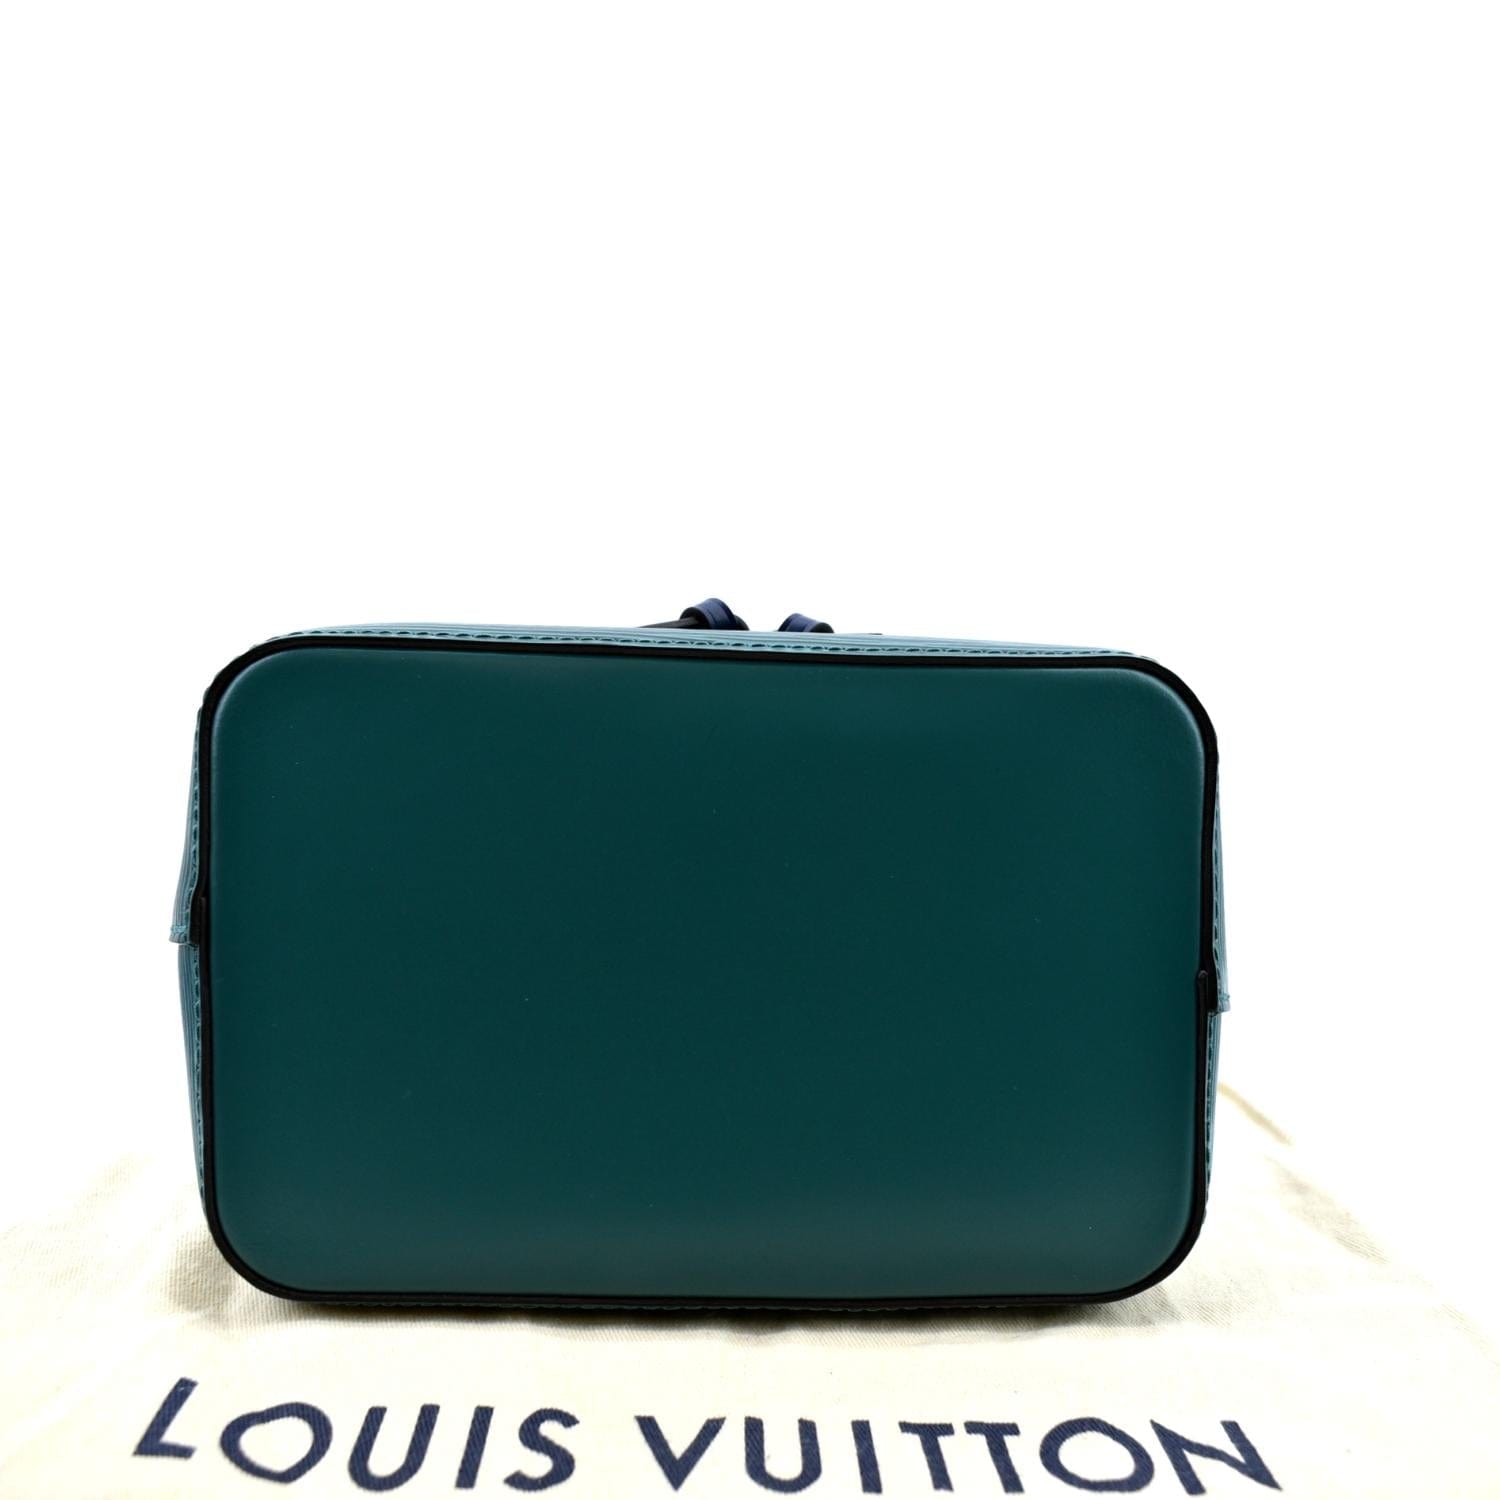 Authentic LOUIS VUITTON Epi Neo Noe BB M57693 Shoulder bag  #246-000-360-4724